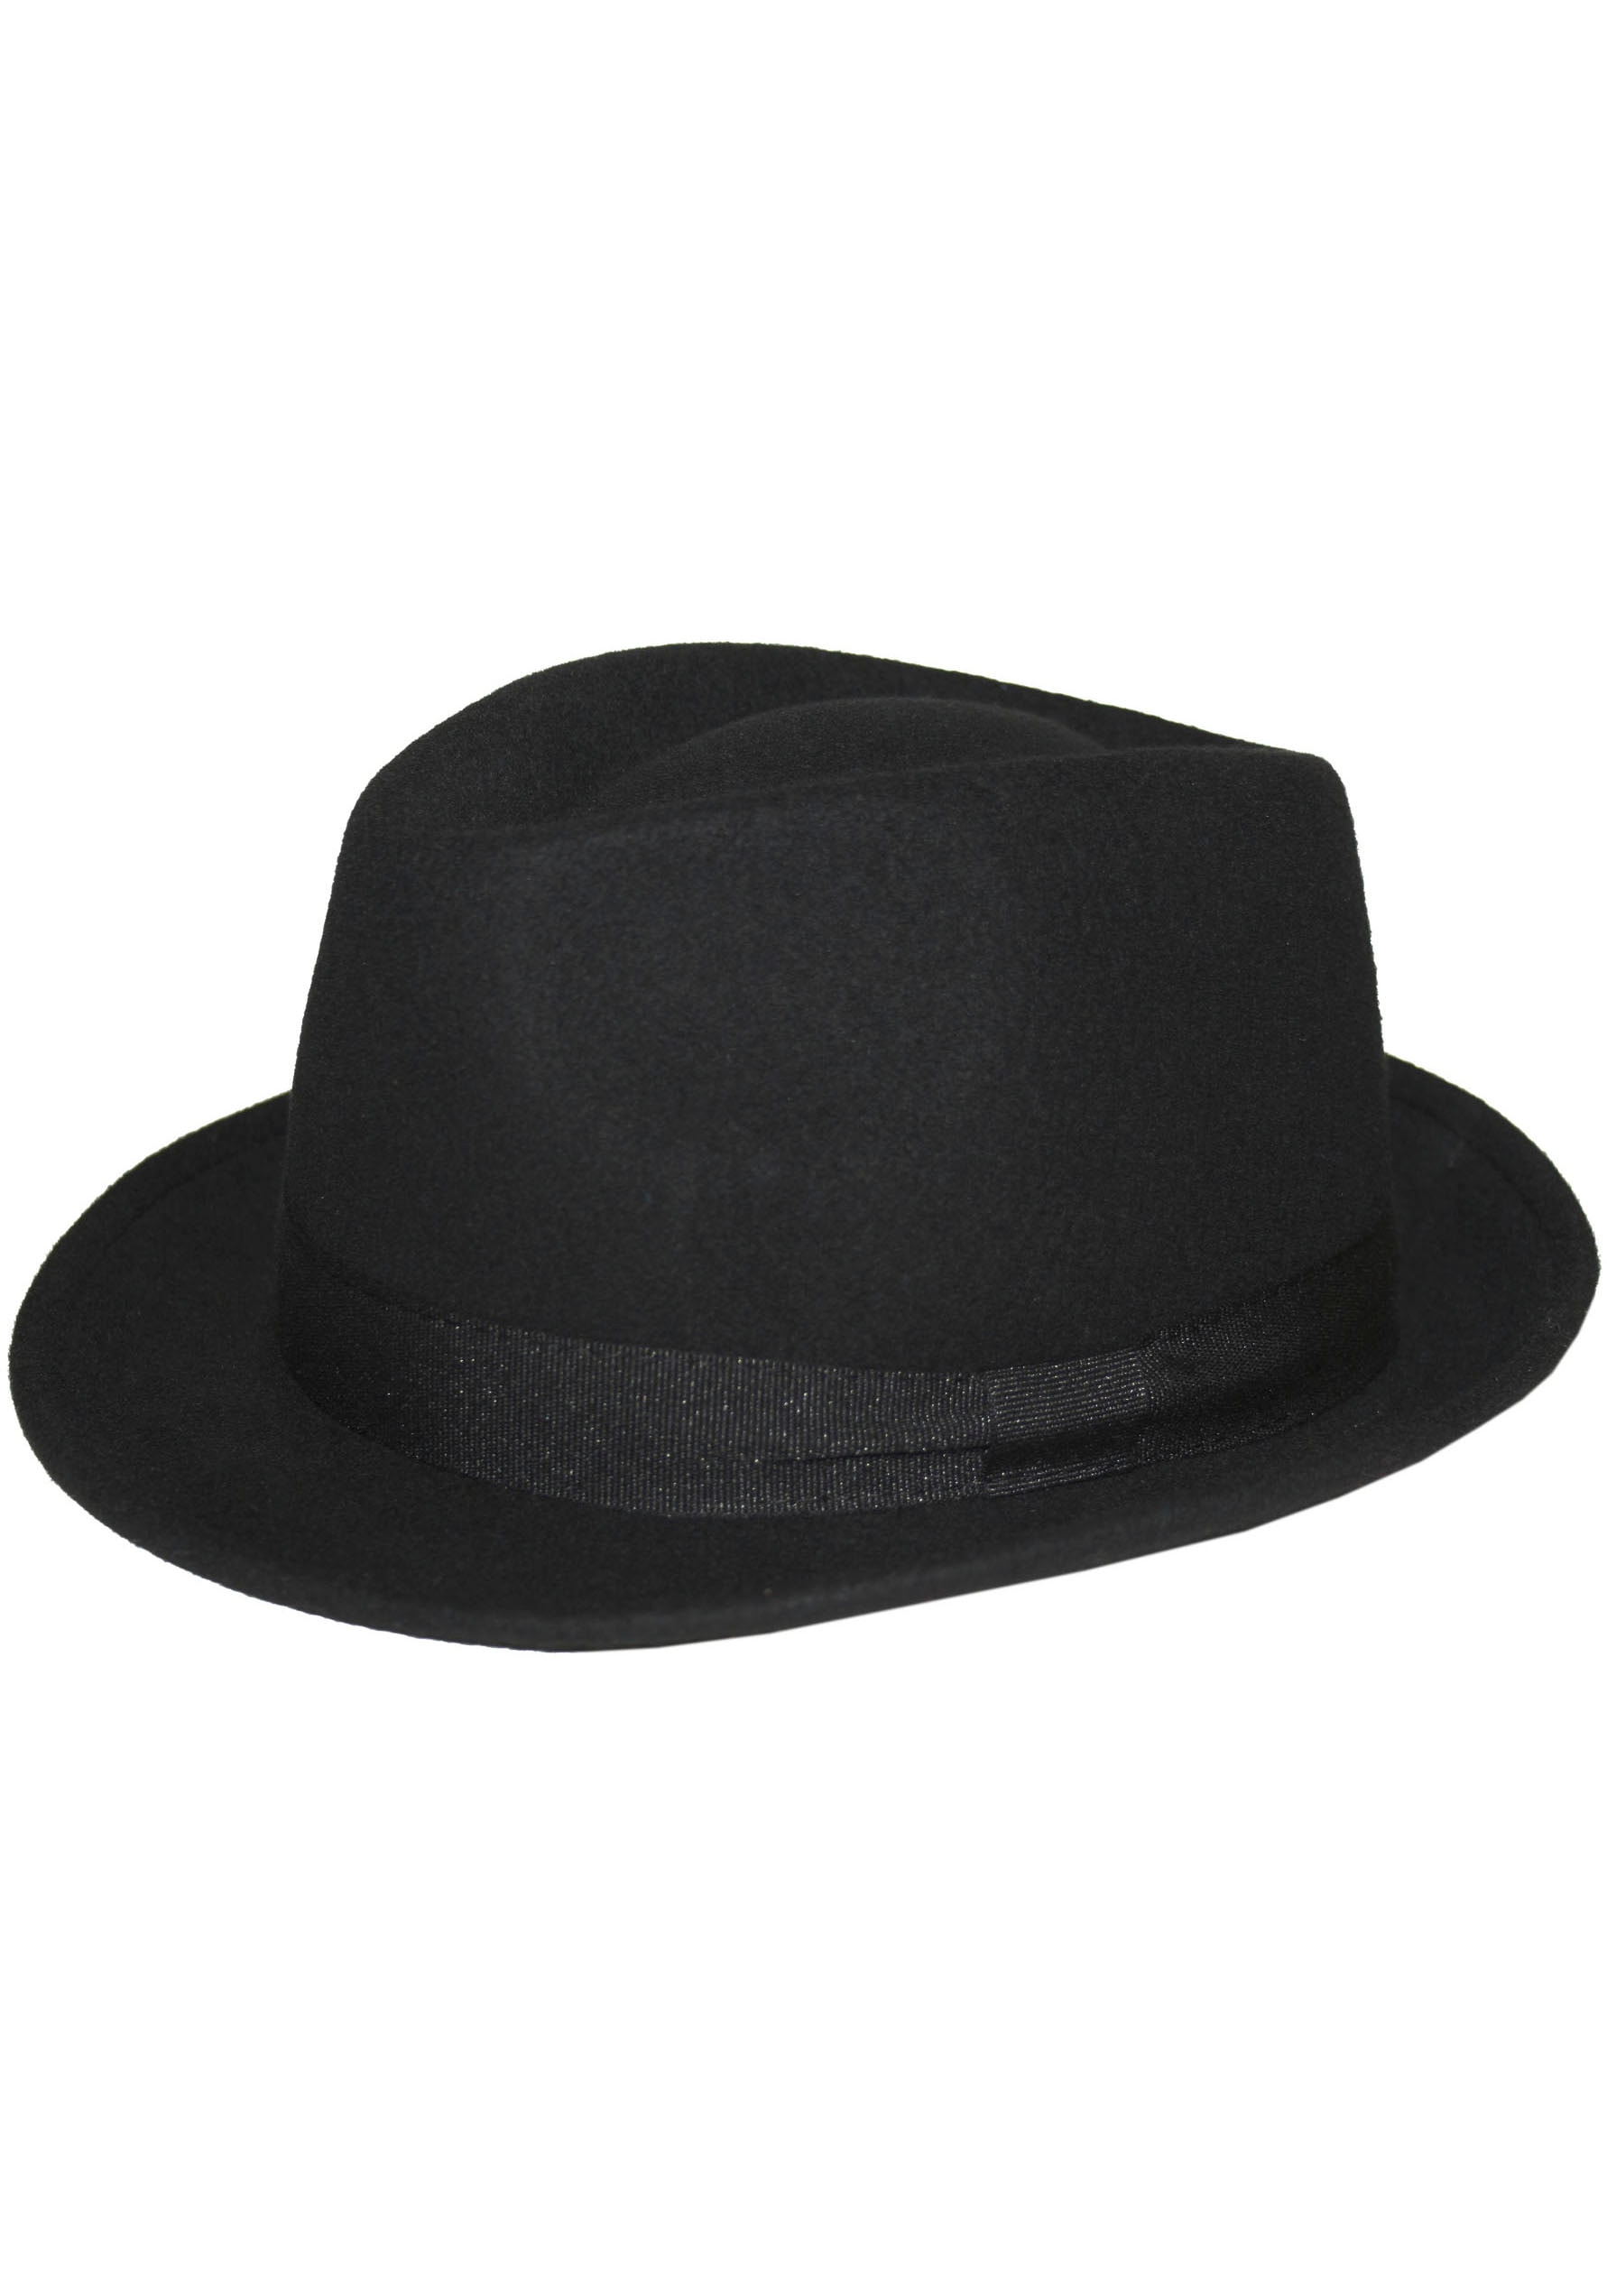 kaufen günstige online Mode - Hüte